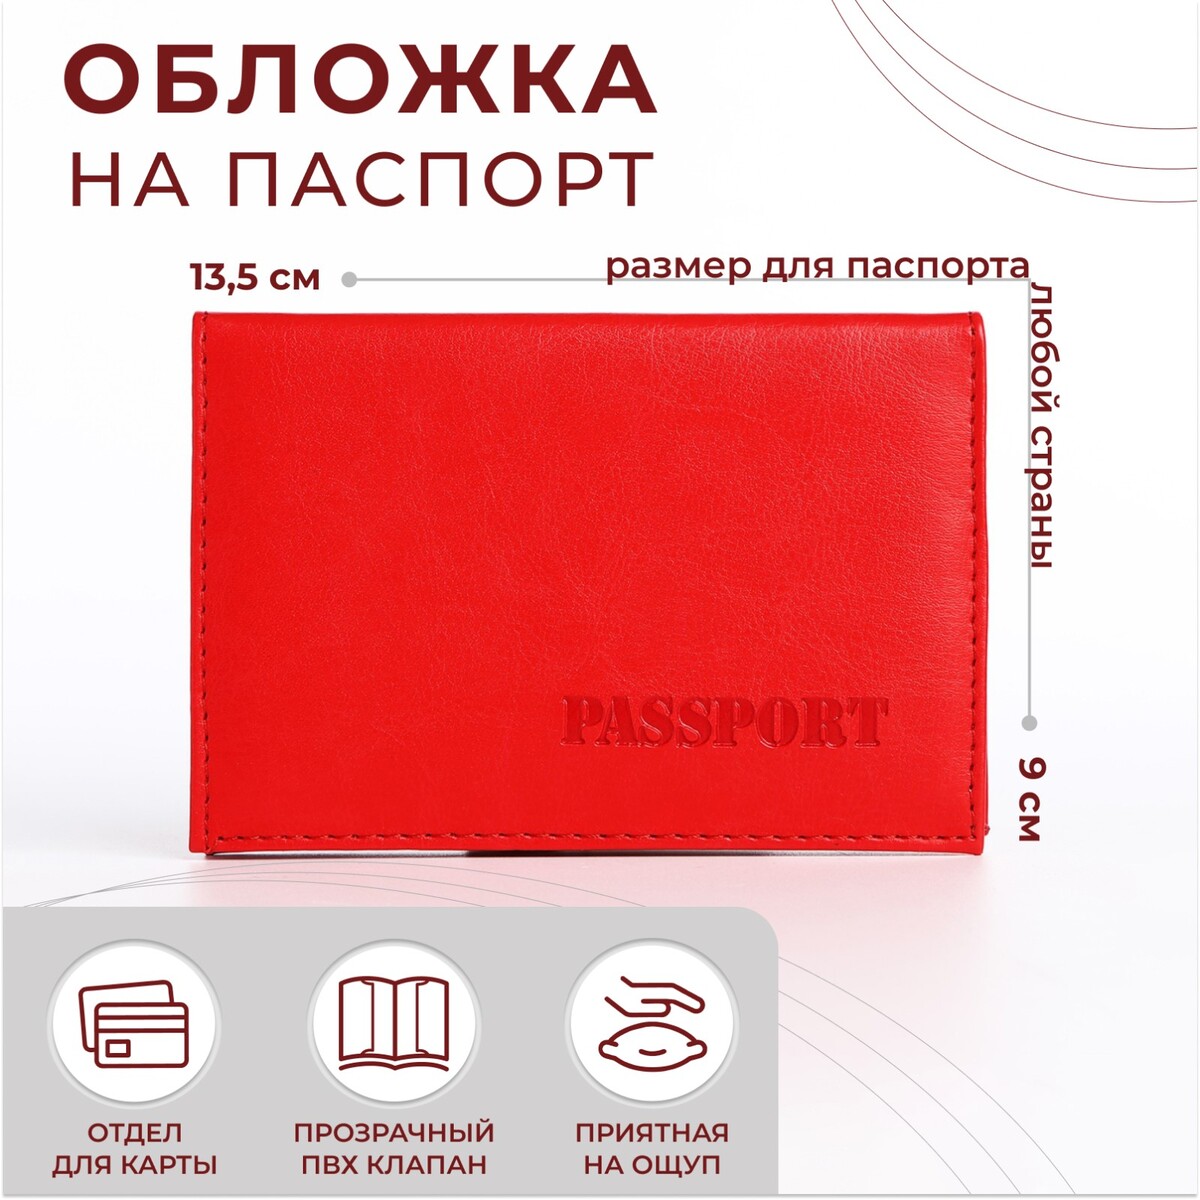 Обложка для паспорта, цвет алый алый перво